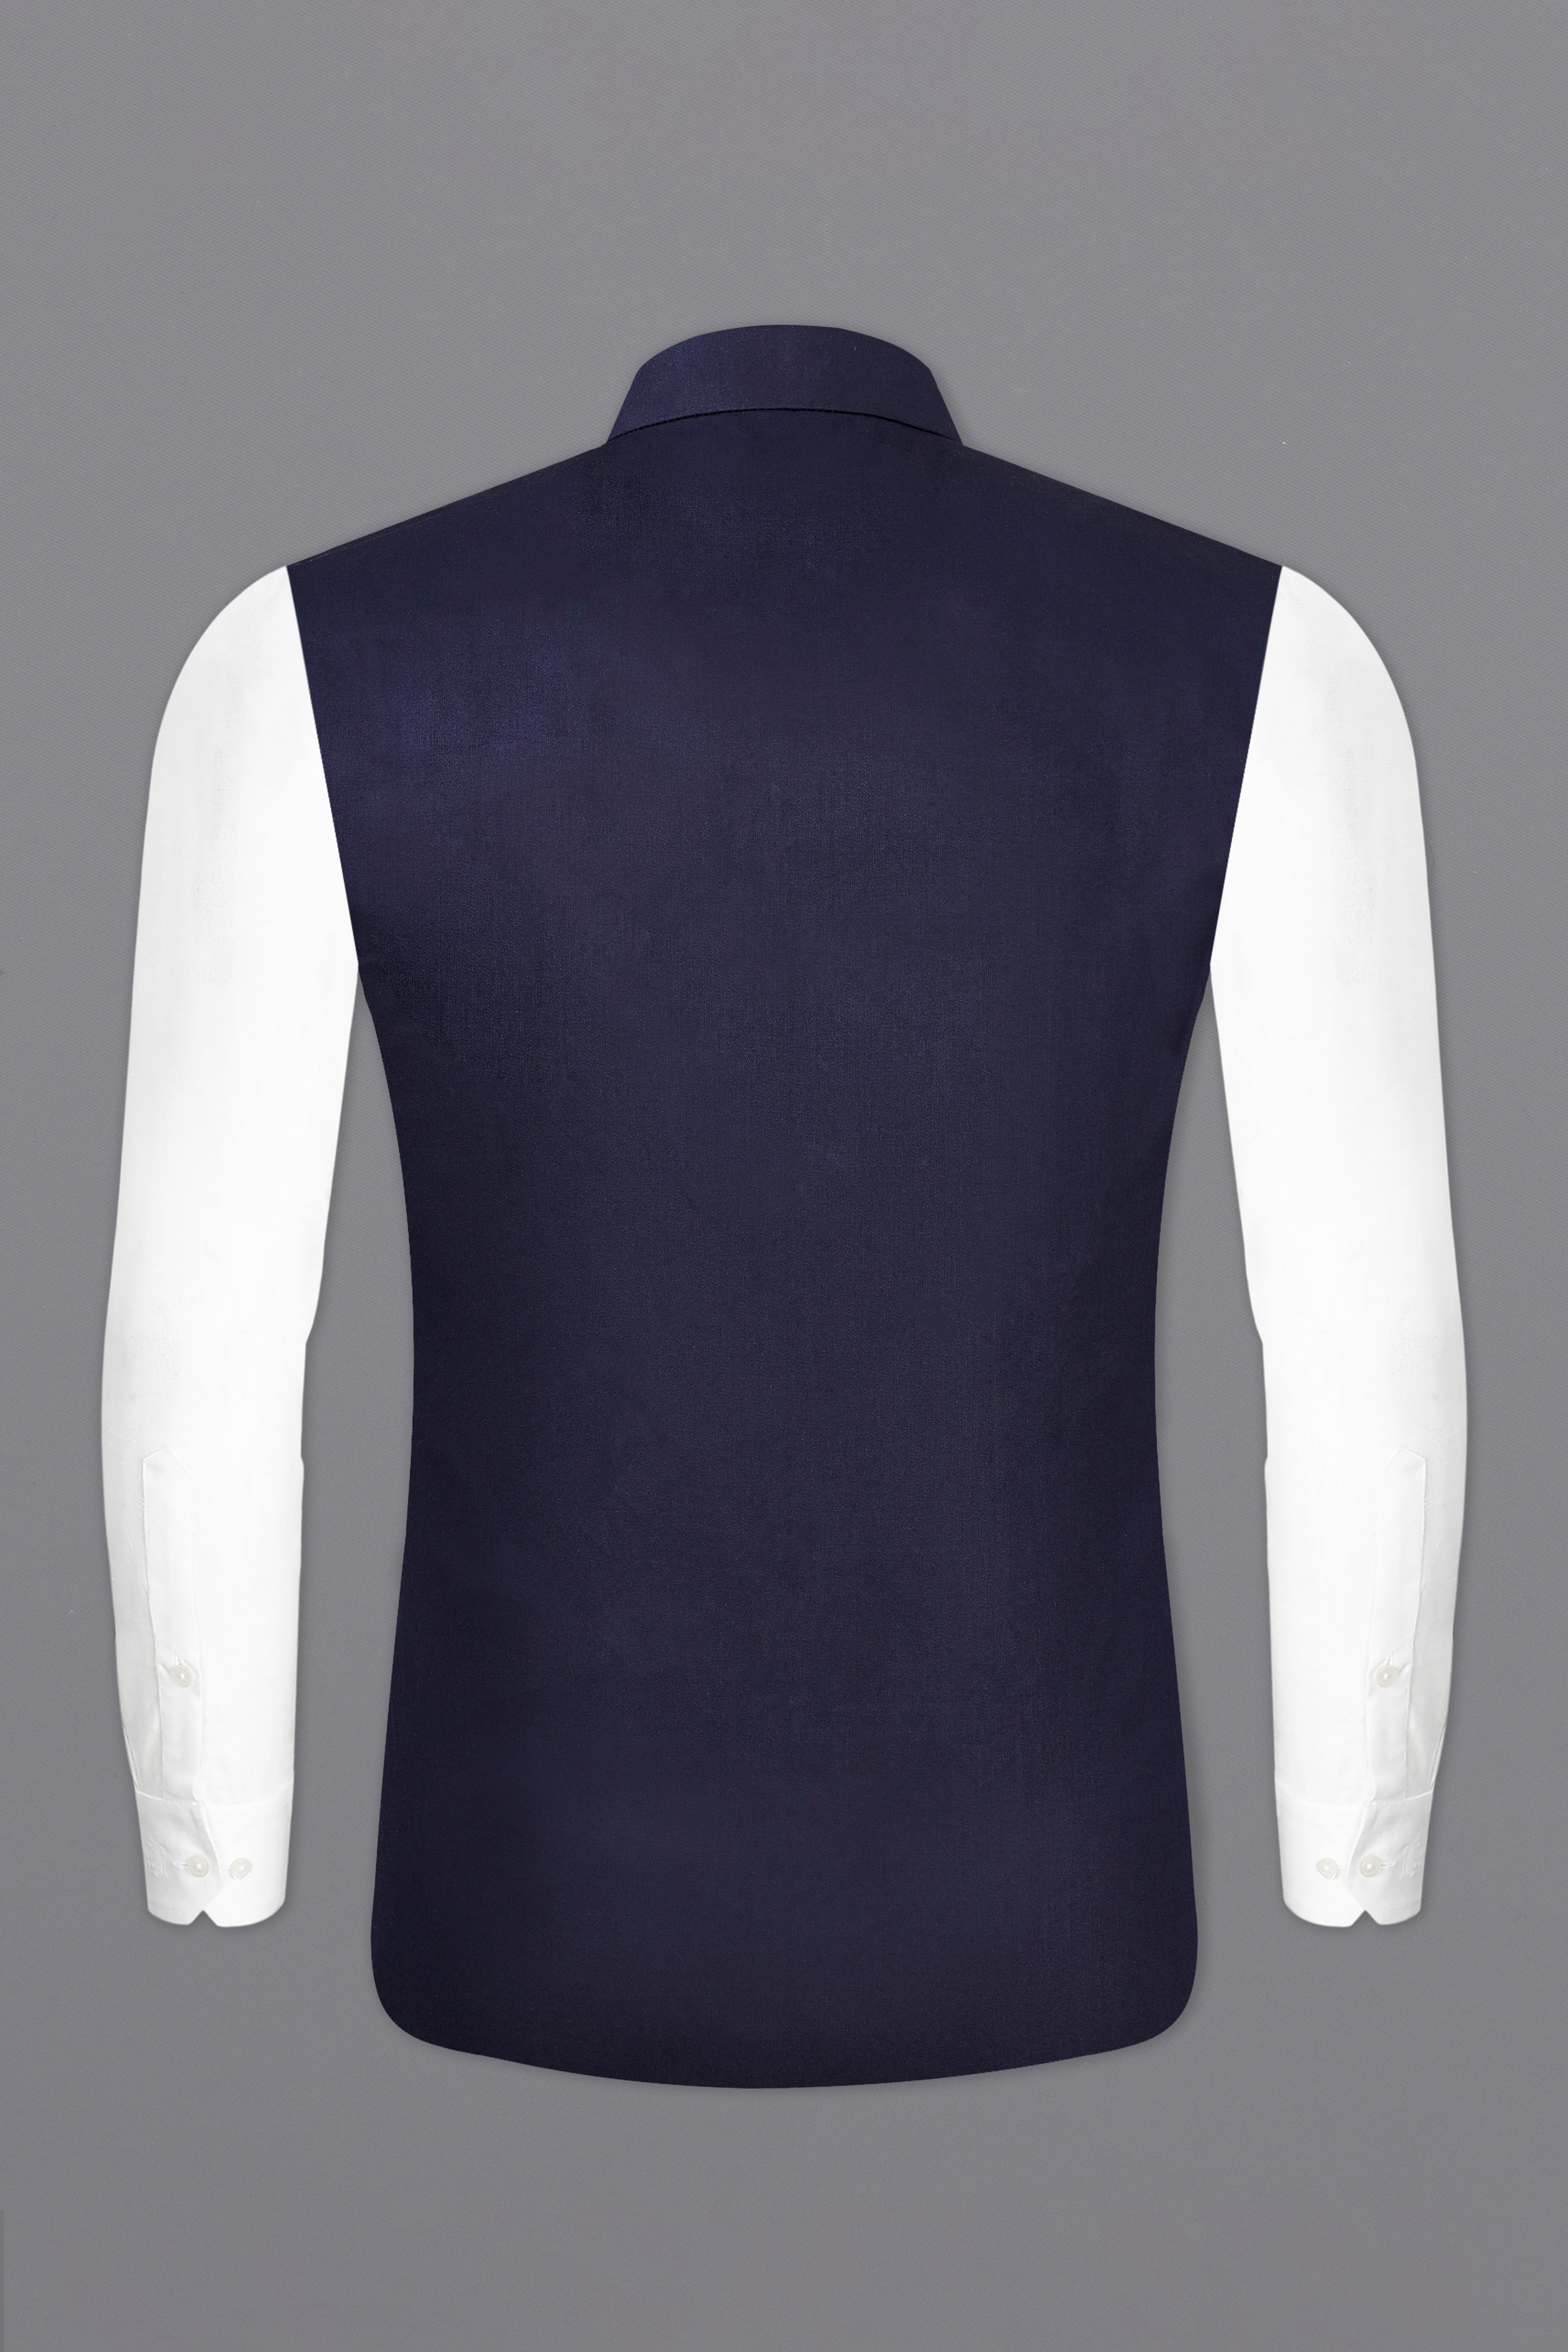 Navy Blue Subtle Sheen Textured Nehru Jacket